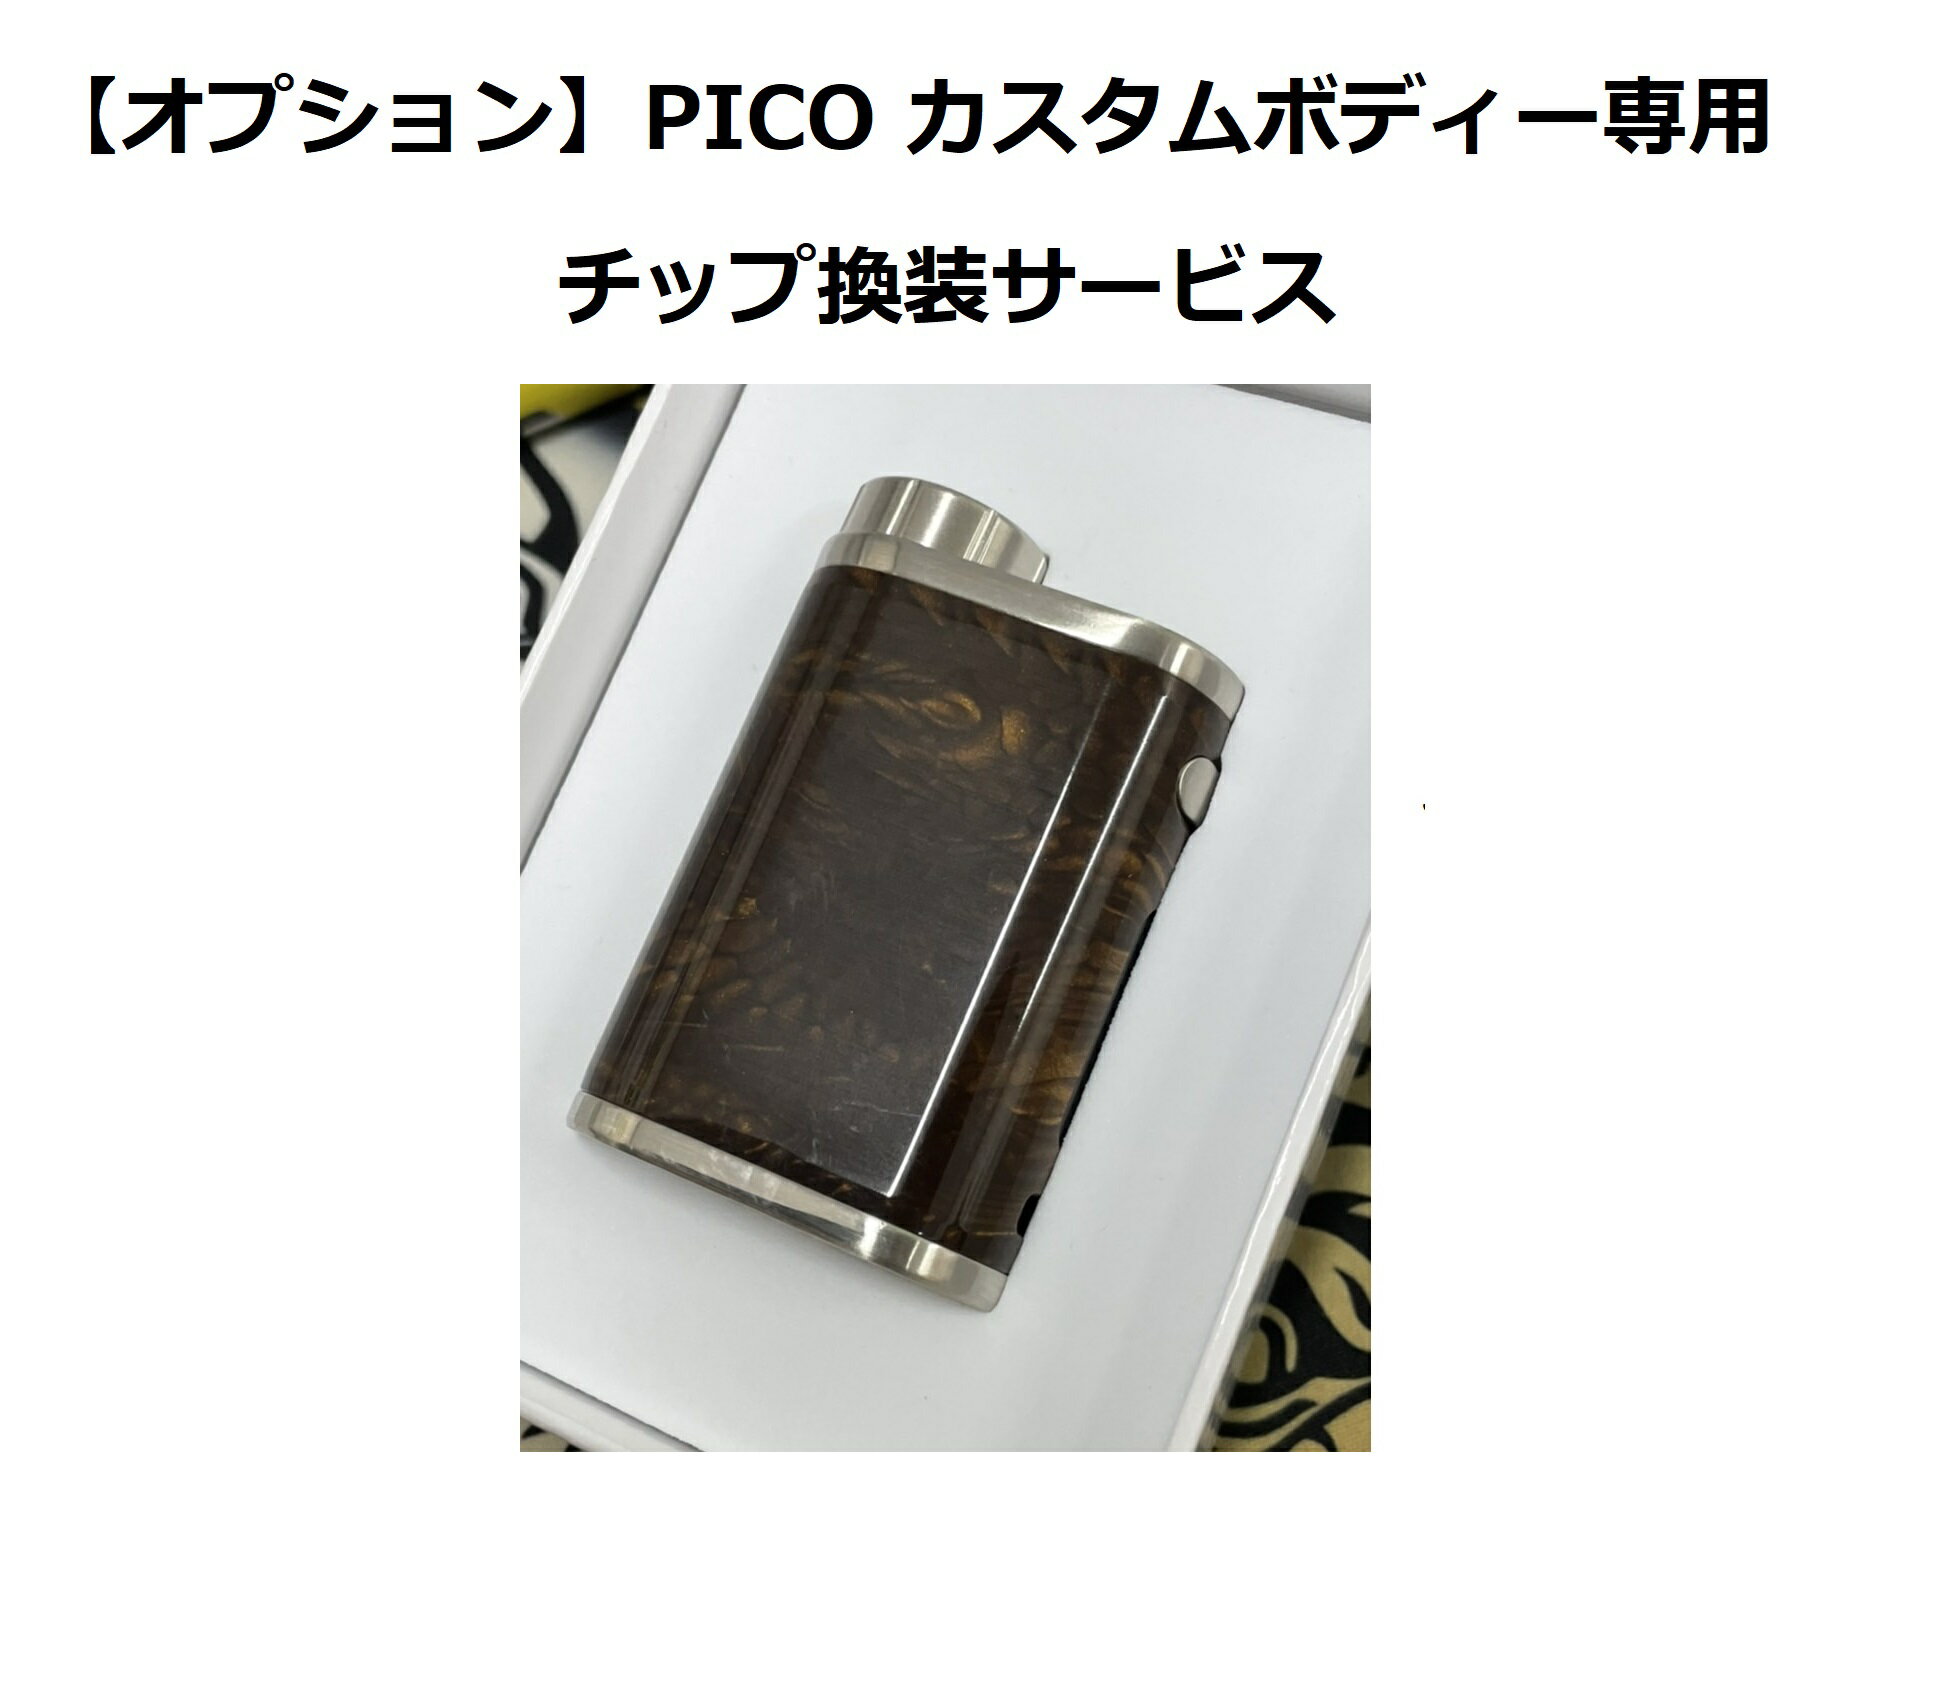 【オプションサービス】PICO専用カスタムボディー チップ換装サービス